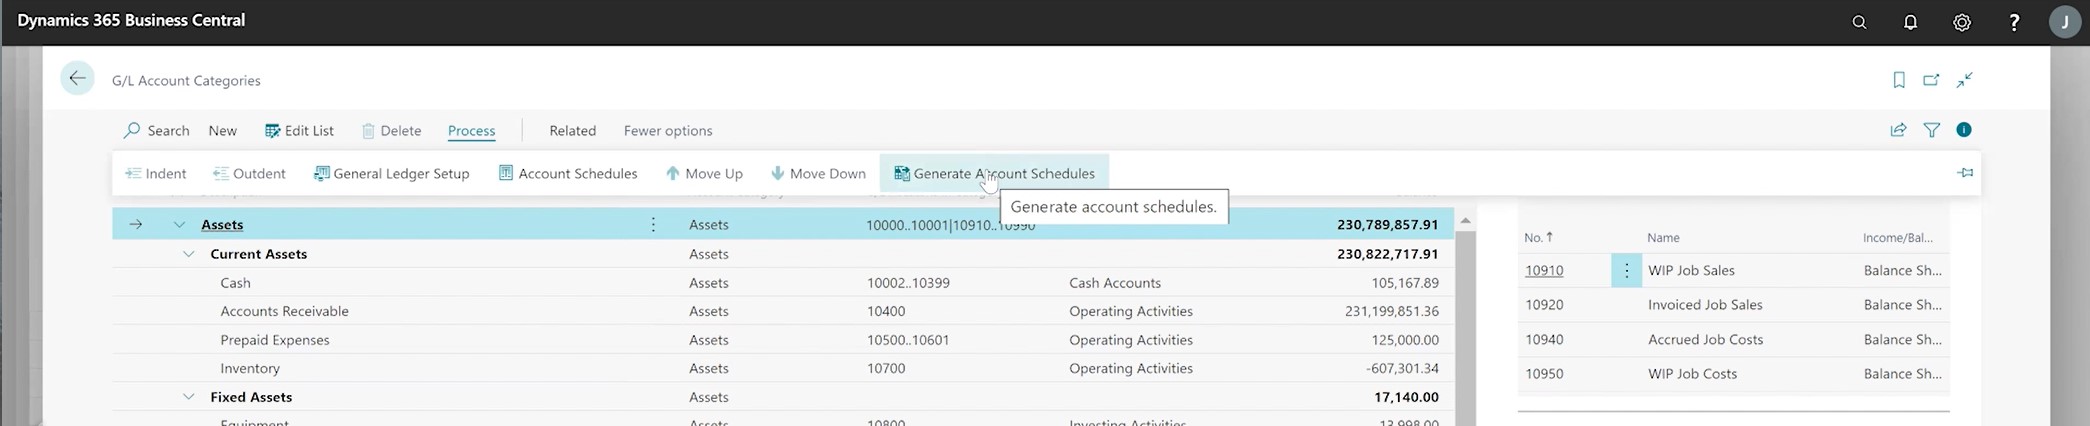 Generate Account Schedules